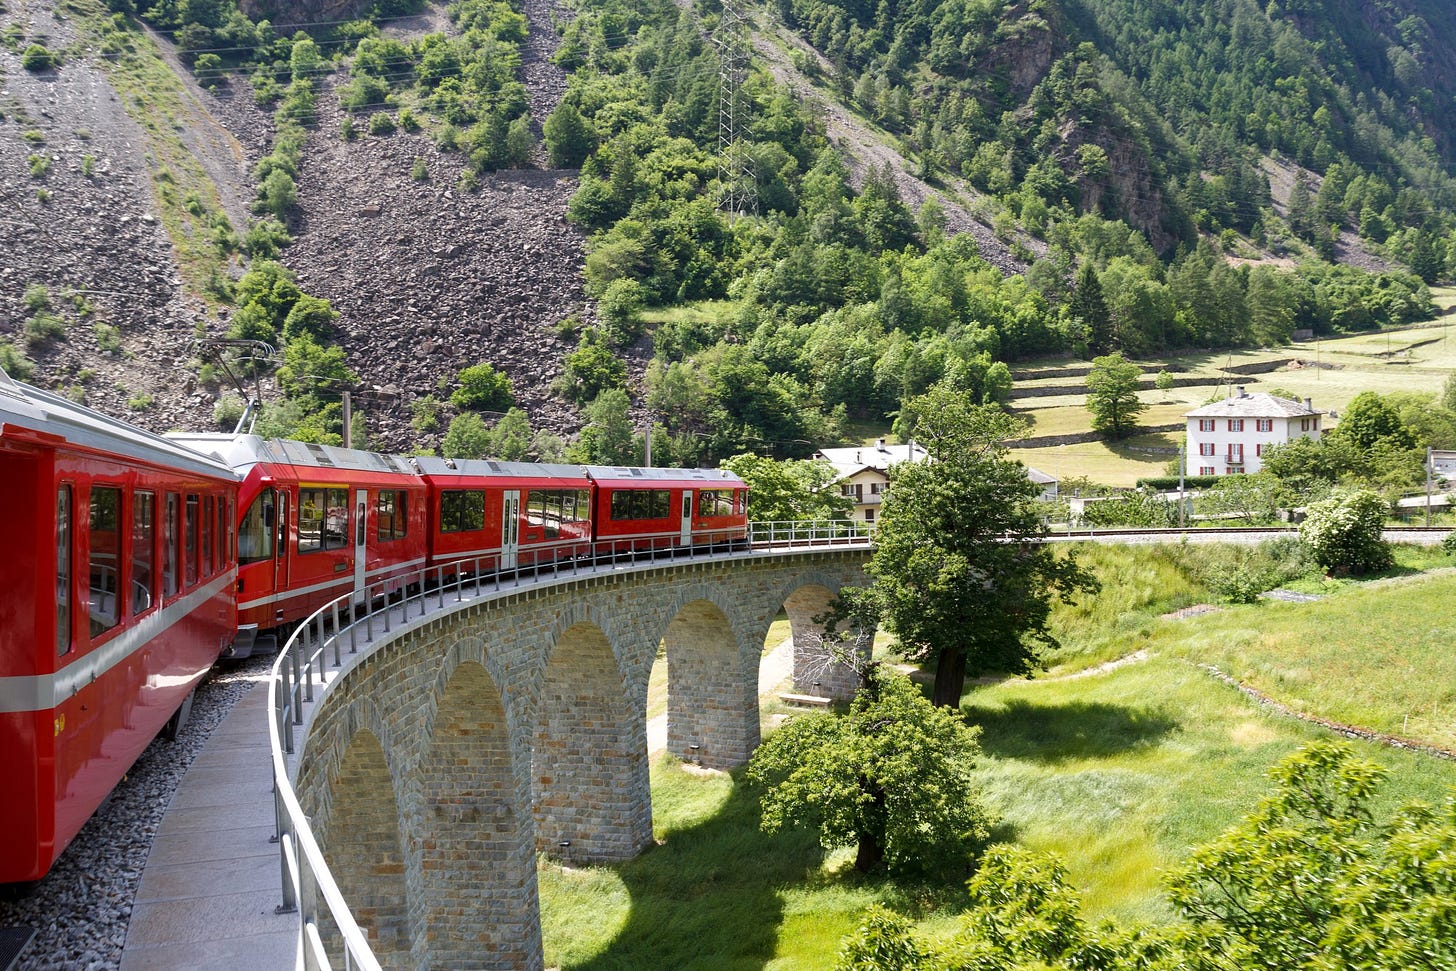 Taking the Slow Train Through Italy